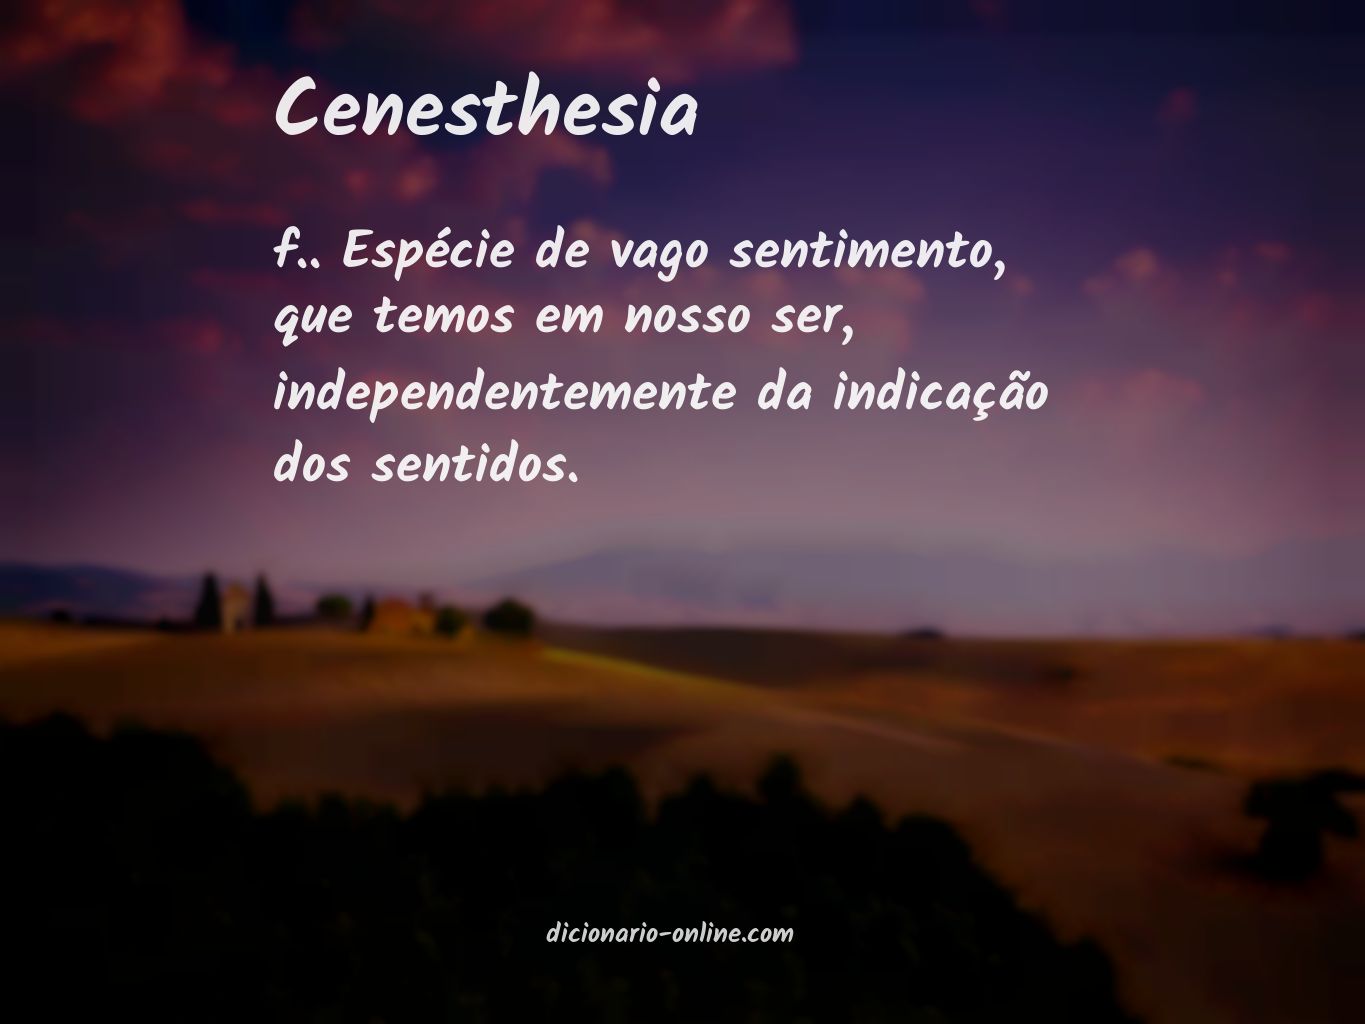 Significado de cenesthesia